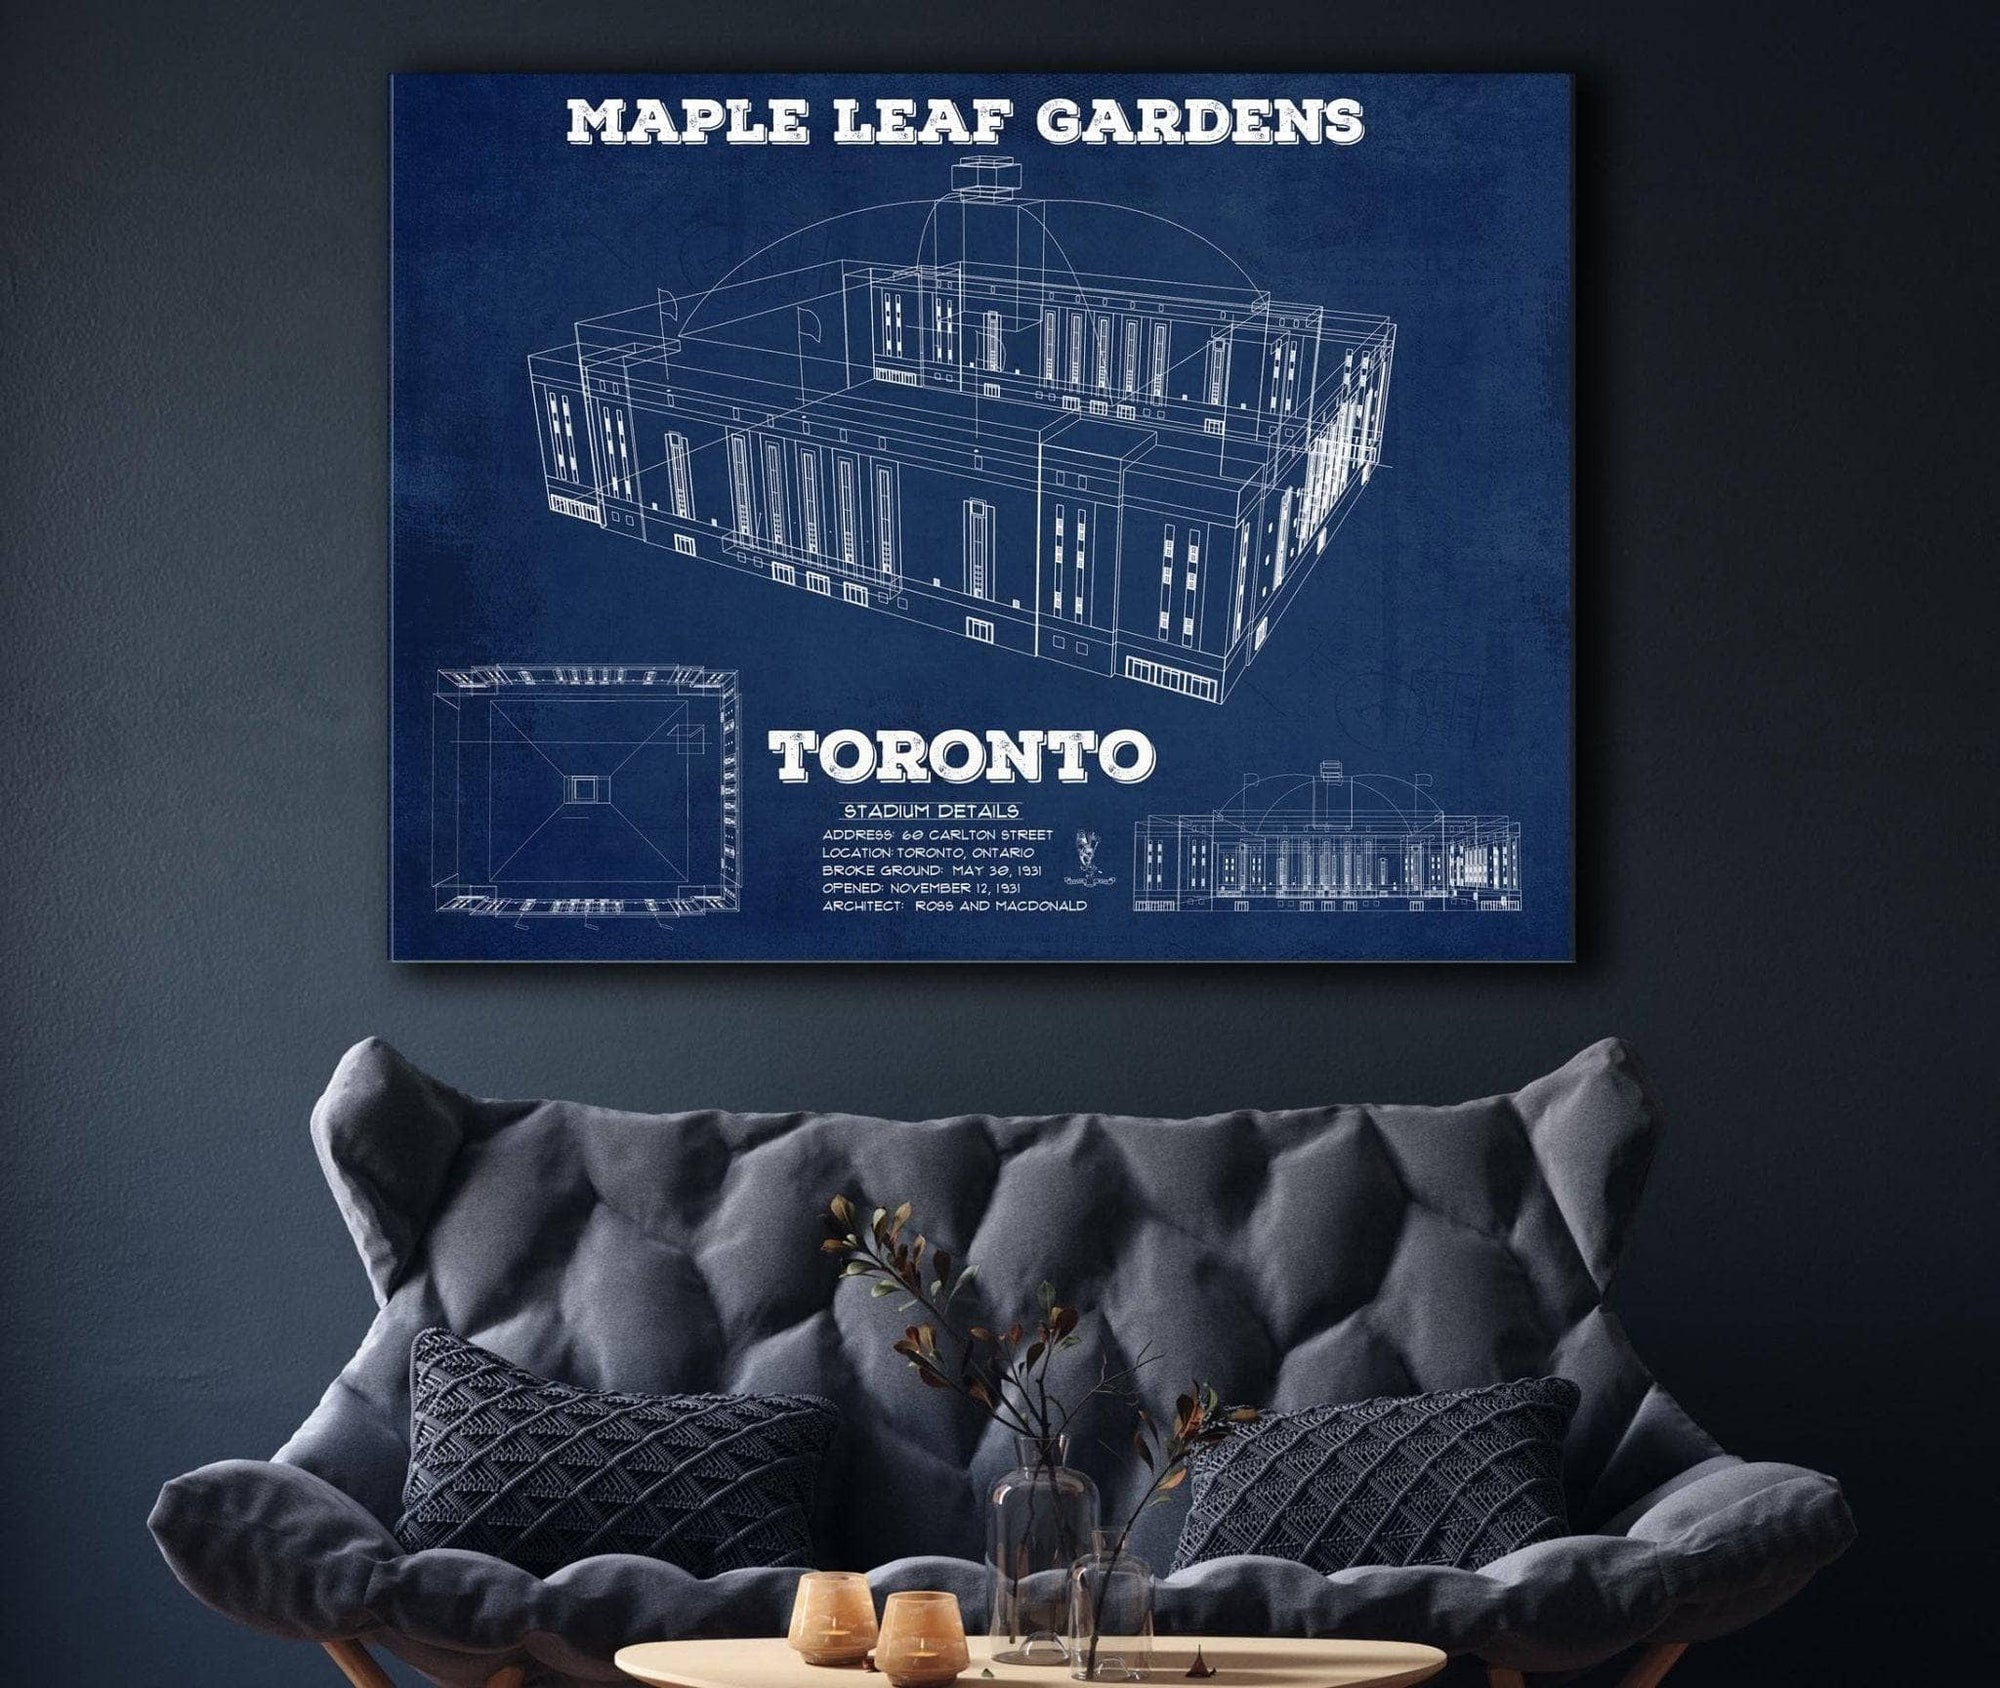 Cutler West Maple Leaf Gardens - Vintage NHL Hockey Print